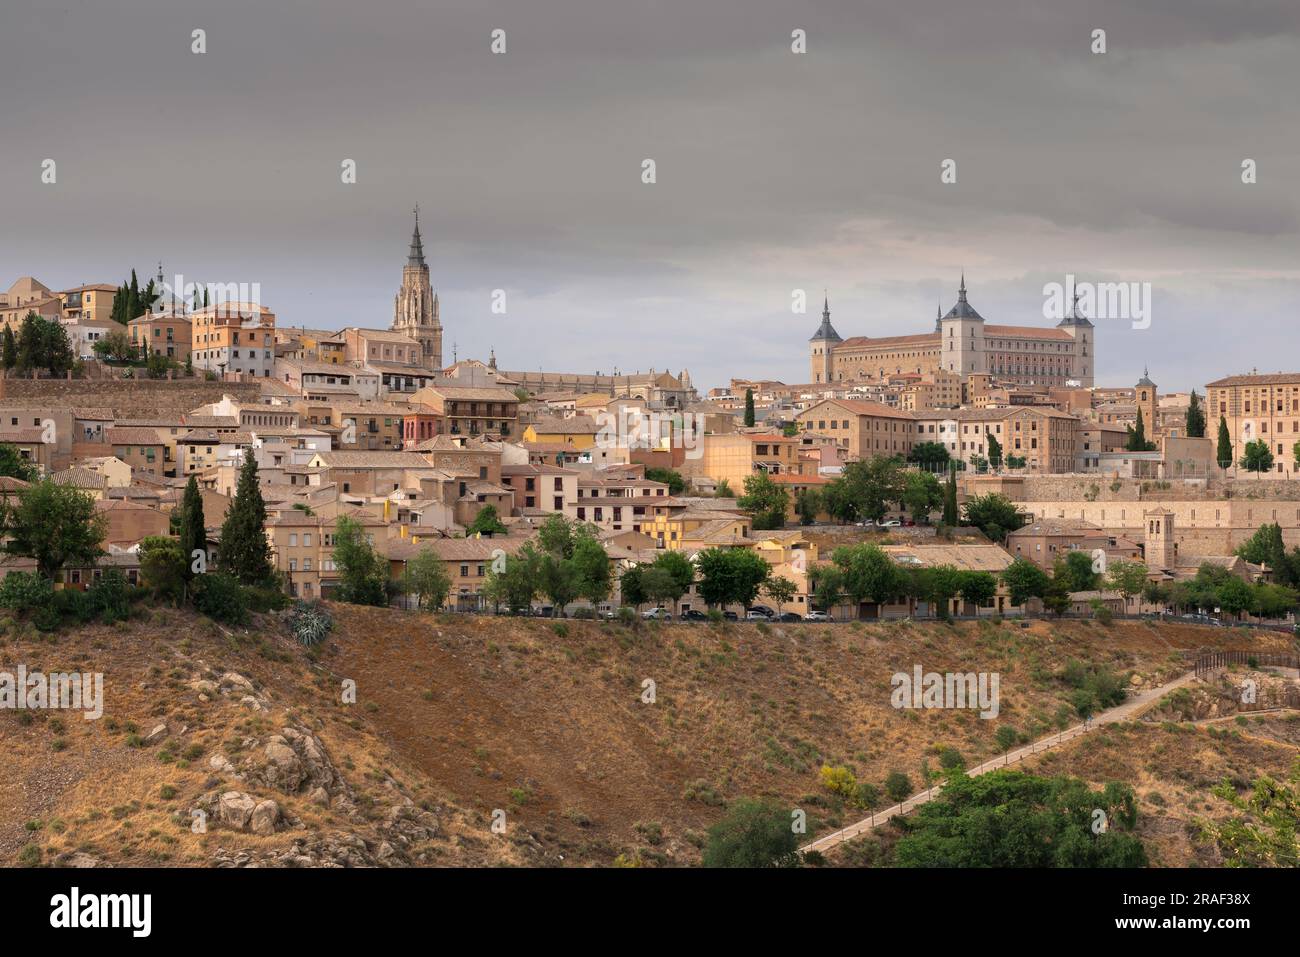 Ville du centre de l'Espagne, vue spectaculaire sur la vieille ville pittoresque de Tolède située sur une colline au-dessus des plaines du centre de l'Espagne. Banque D'Images